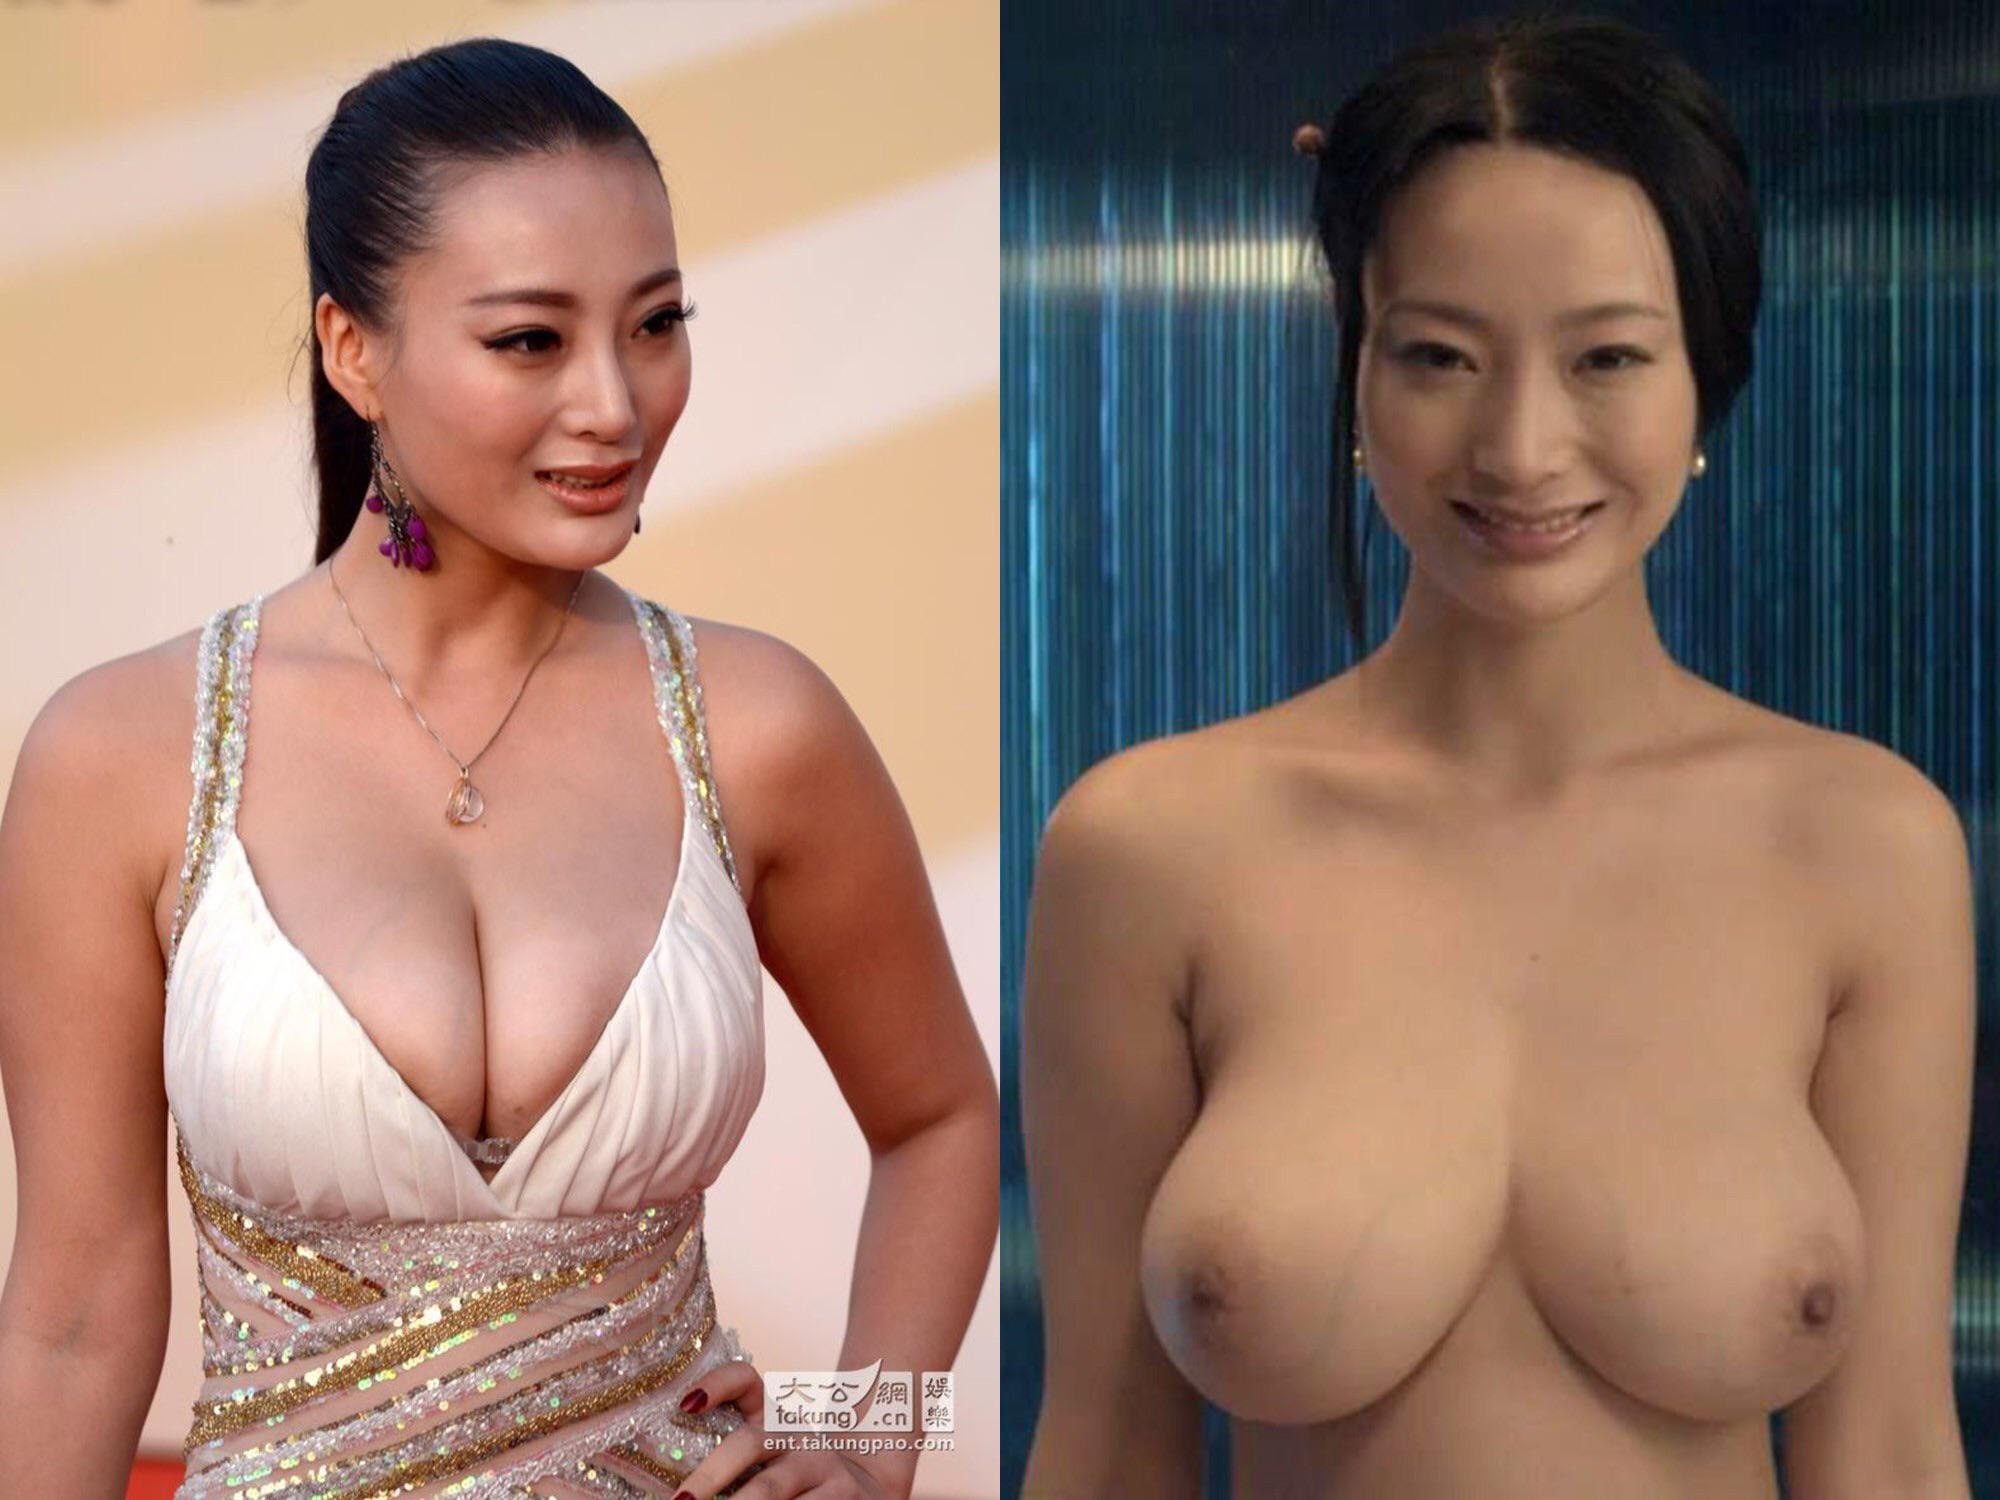 Asian pornographic actresses